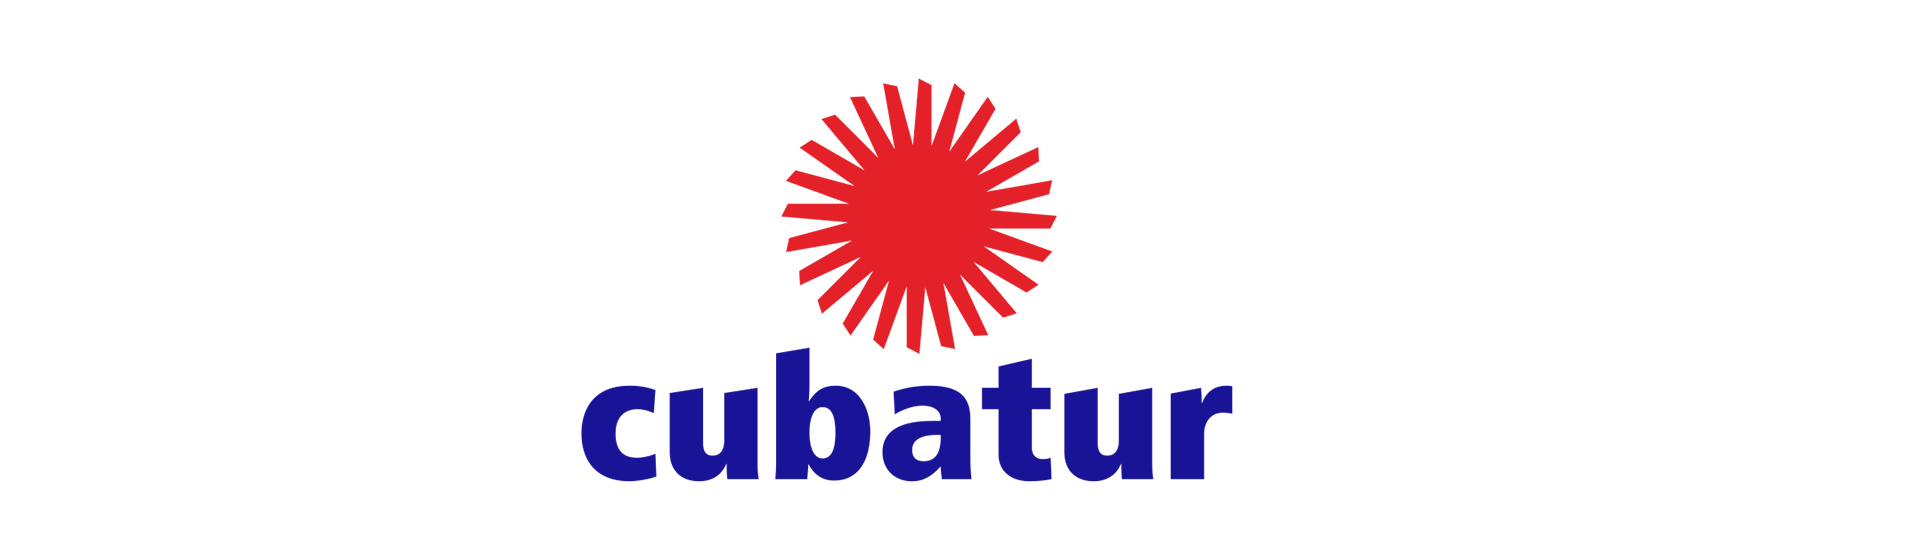 Логотип компании Cubatur Cuba